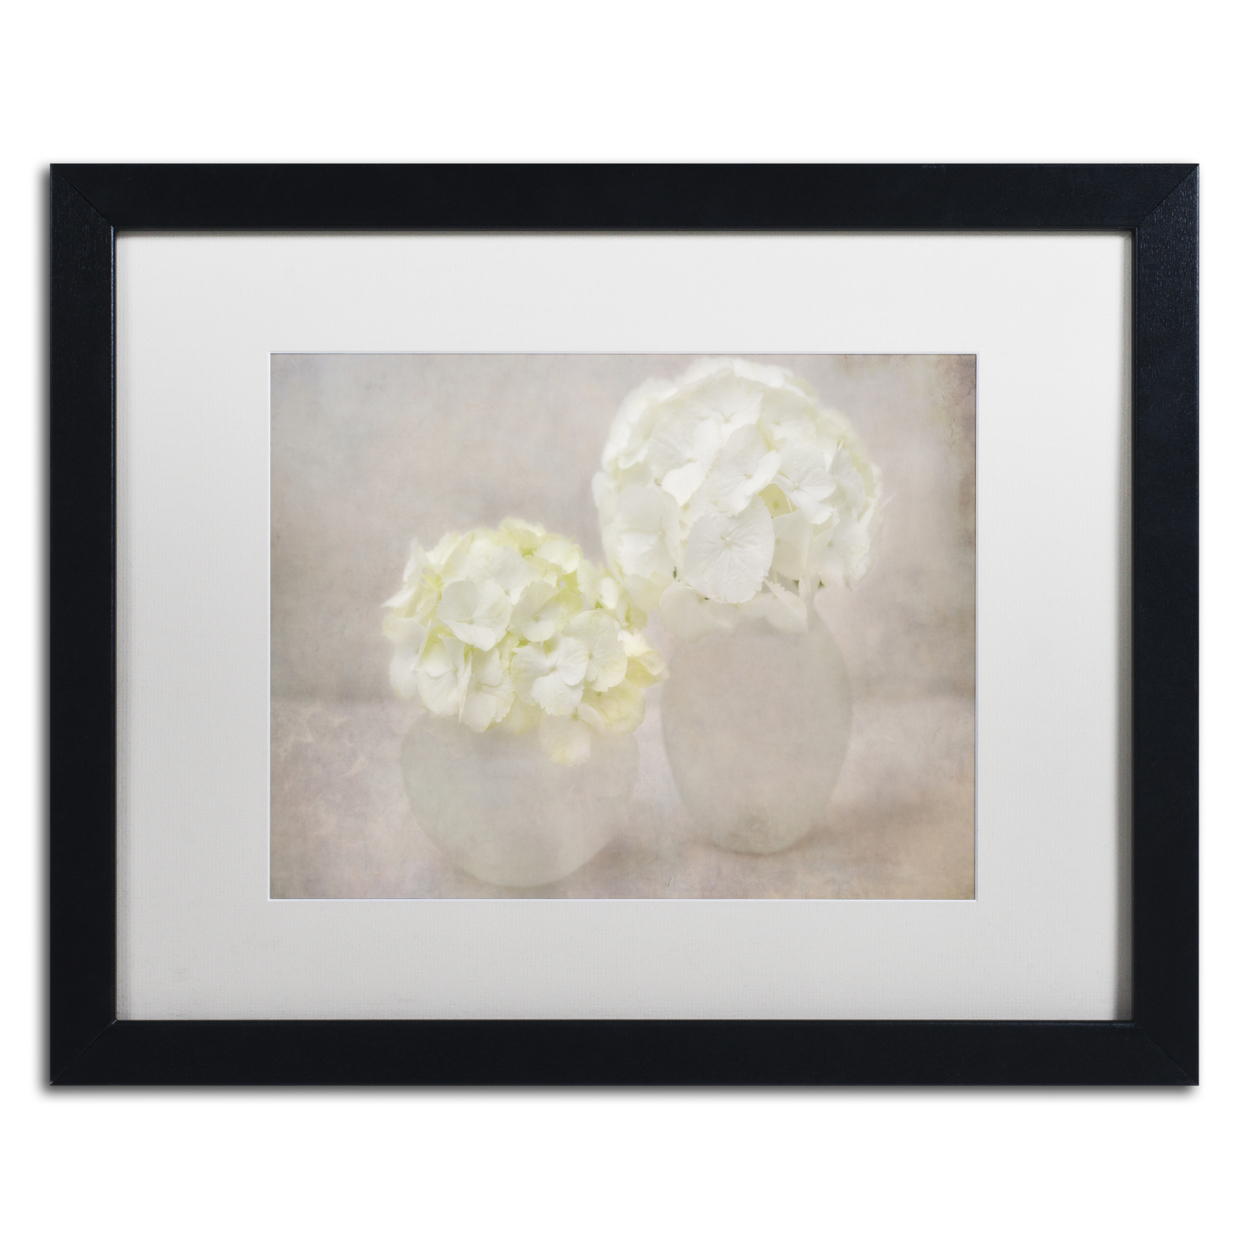 Cora Niele 'White Hortensia Still Life' Black Wooden Framed Art 18 X 22 Inches